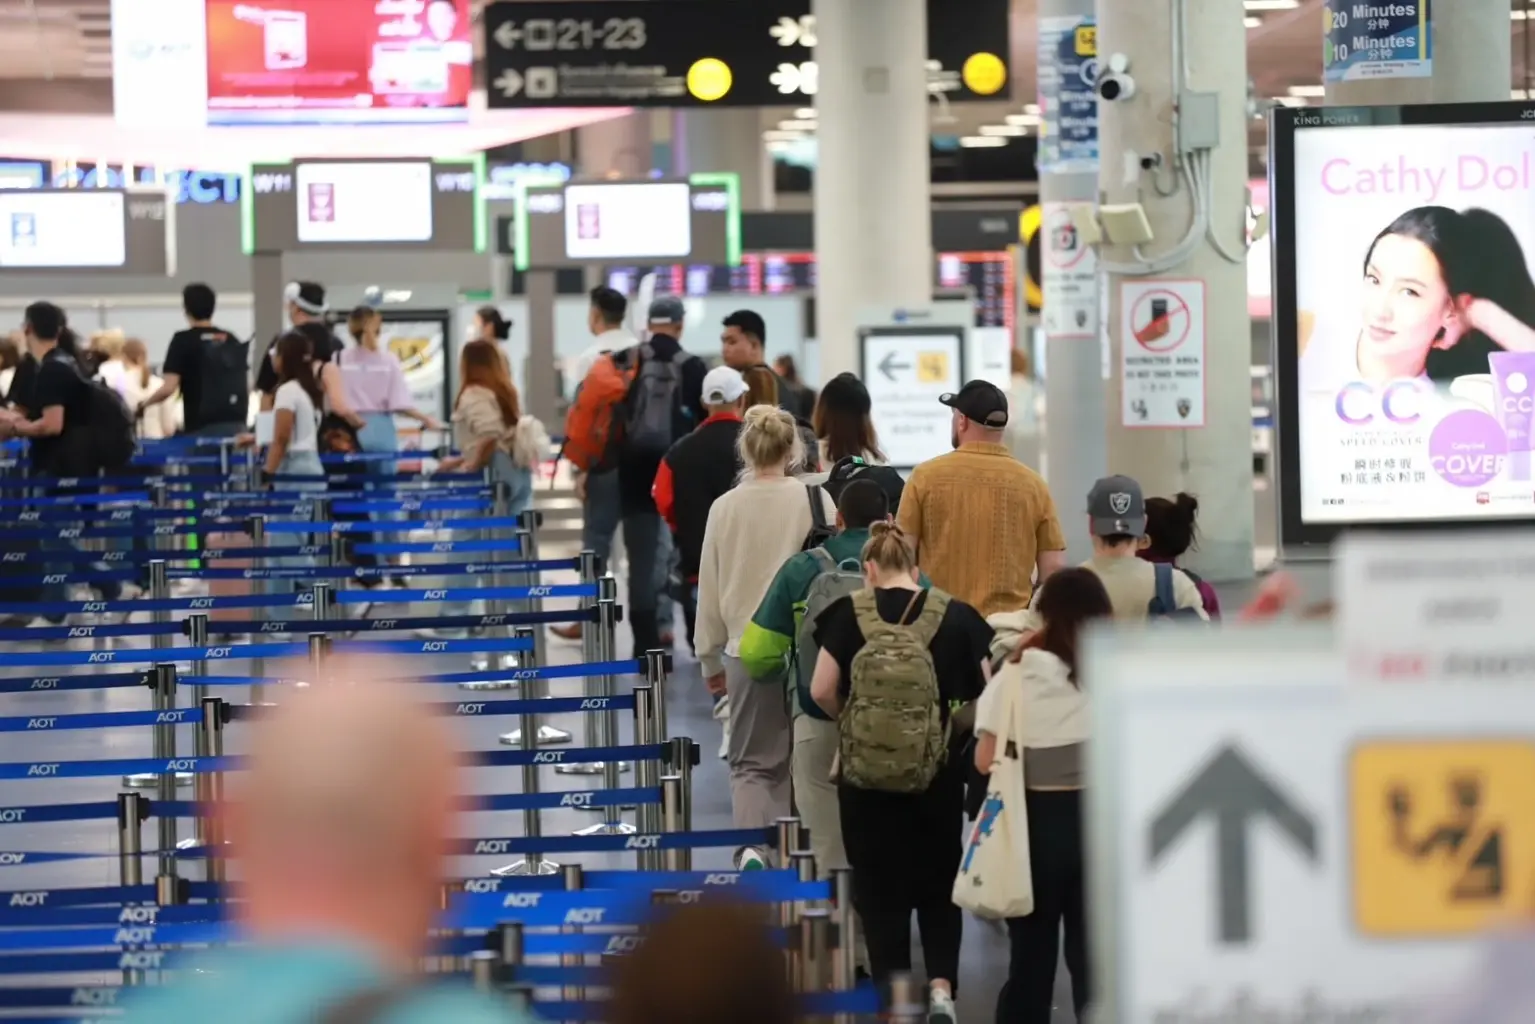 泰国素万那普机场预计新年期间平均每天达18.2万人次